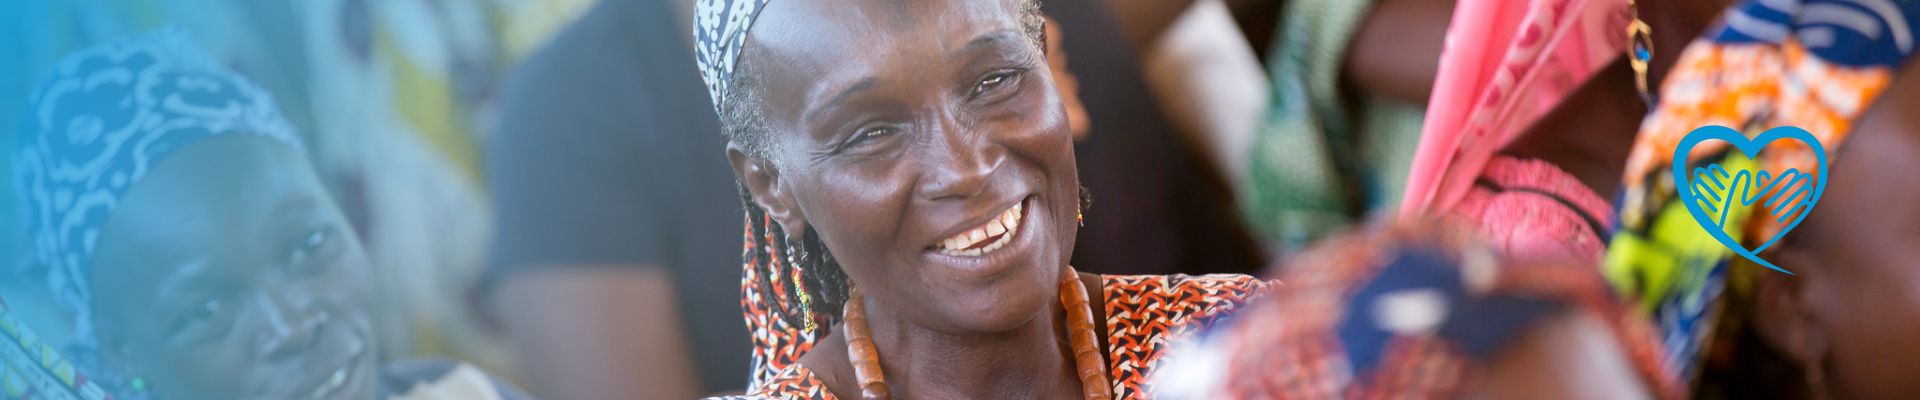 Afrikanische Frau lächelt glücklich - Für UN Women Projekte spenden